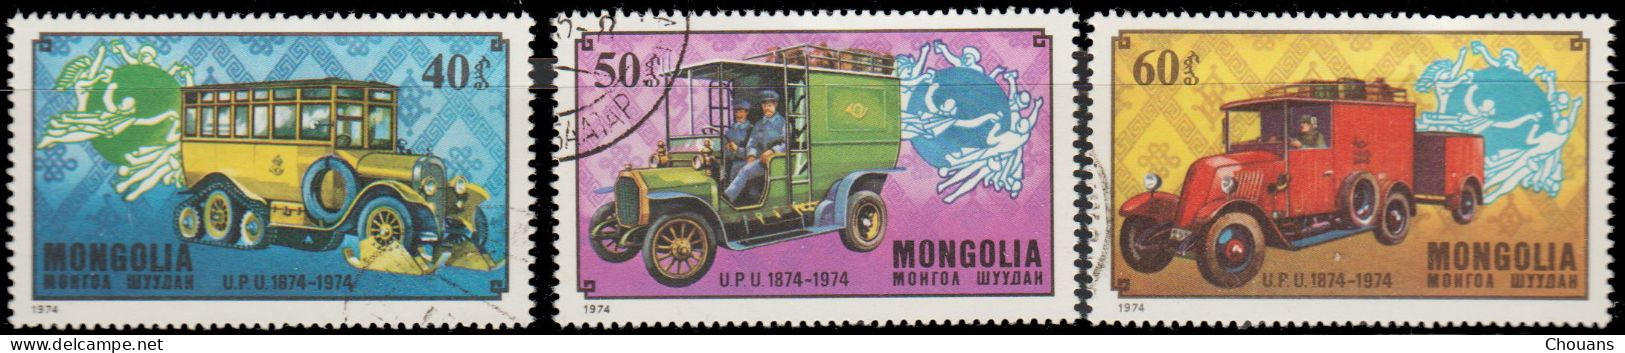 Mongolie 1974. ~ YT 764/66 - Centenaire U.P.U. - Transports Postaux - Mongolei